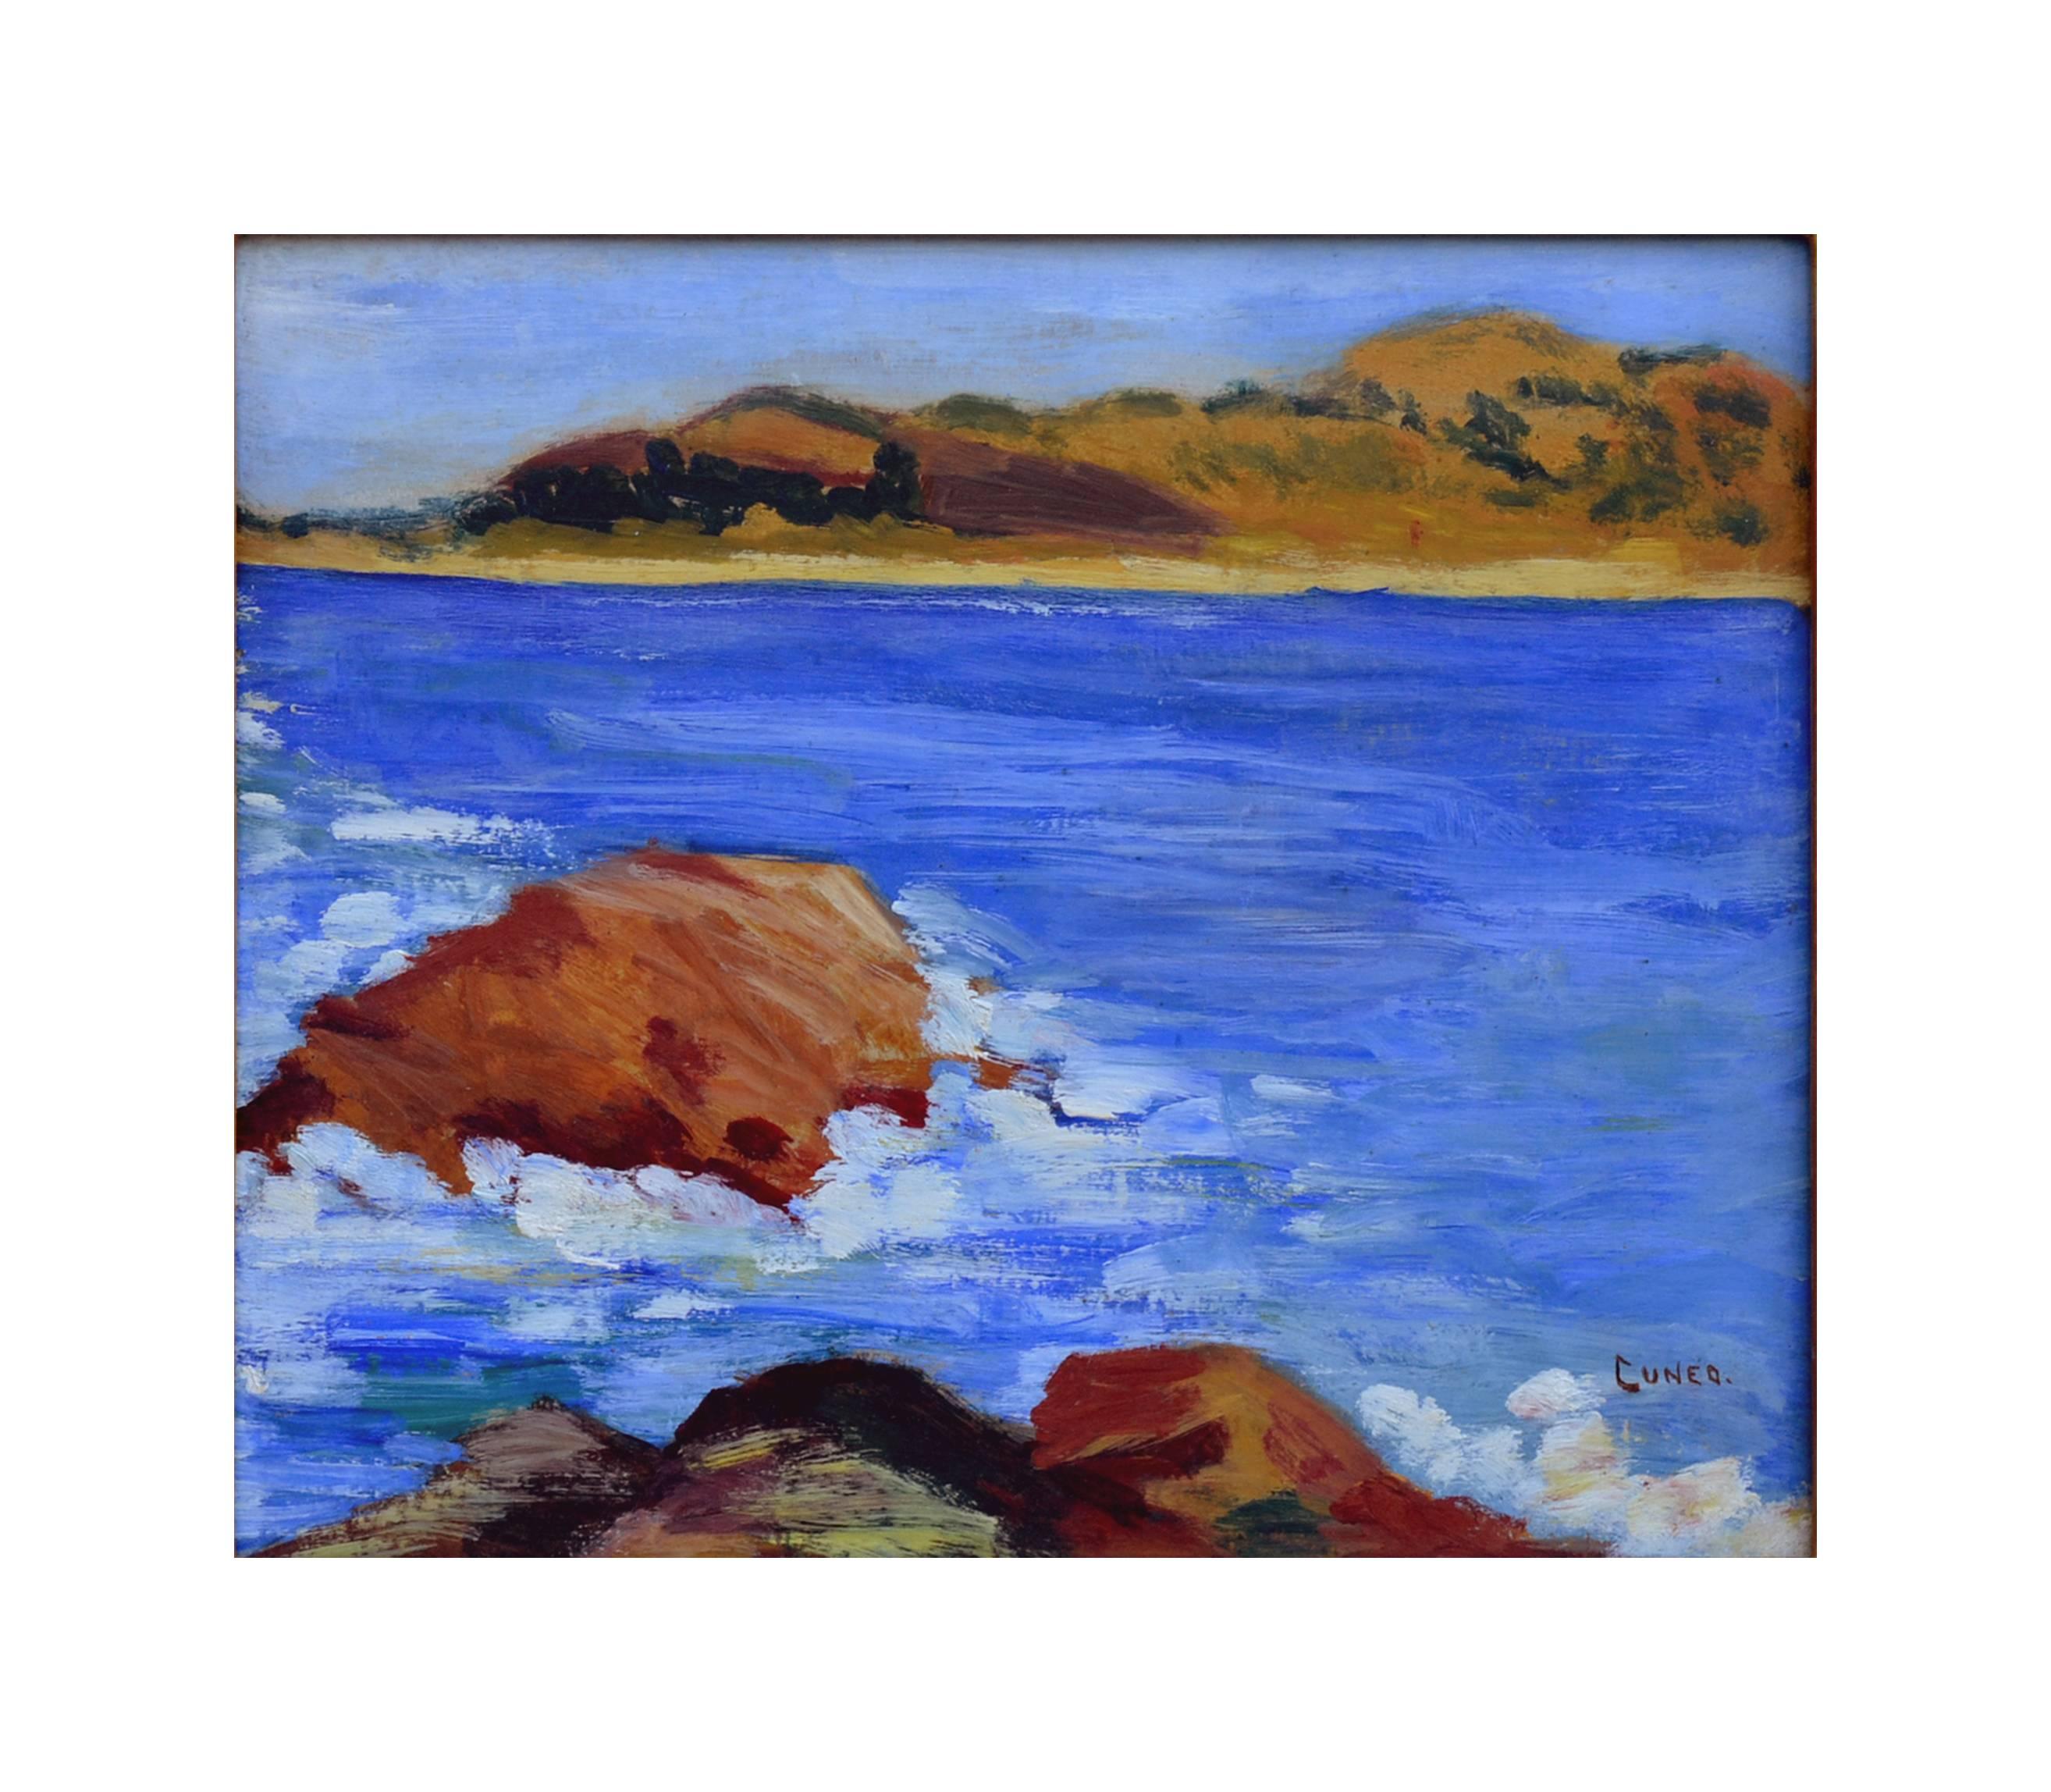 Carmel Point Lobos und Monastery Strand- Meereslandschaft aus dem frühen 20. Jahrhundert – Painting von Rinaldo Cuneo